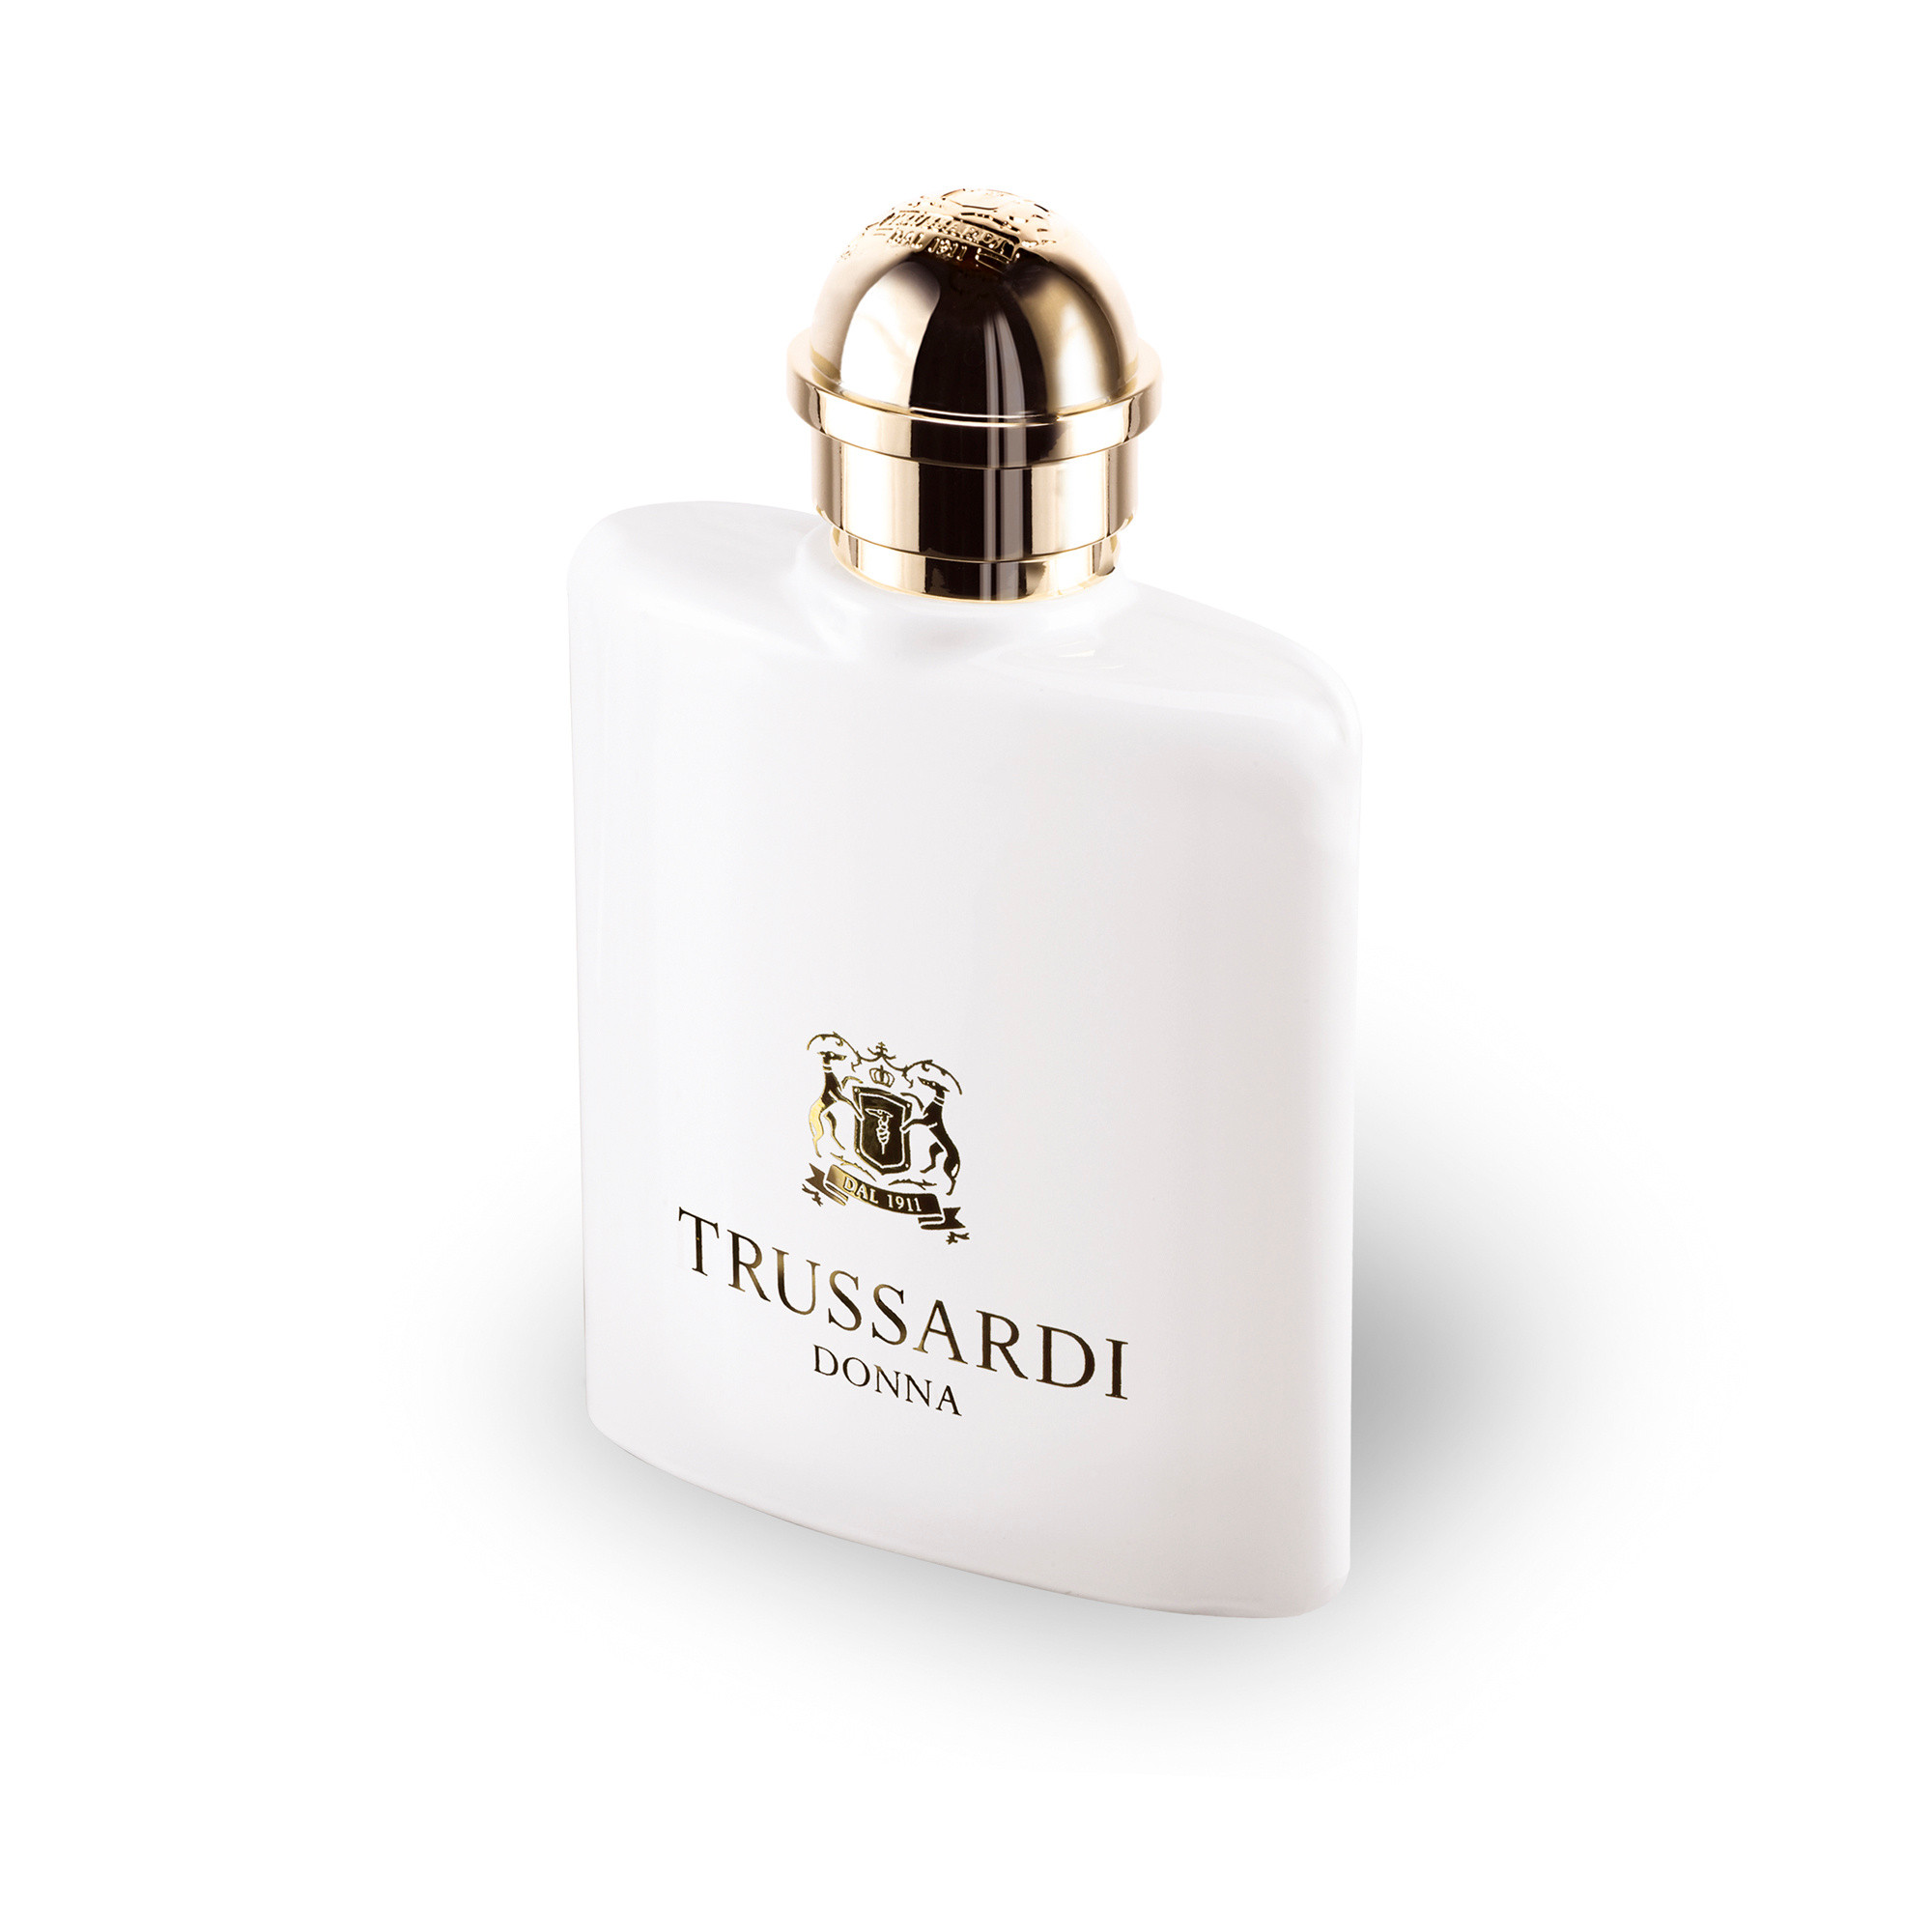 Trussardi Donna Eau De Parfum 30 ml, Bianco, large